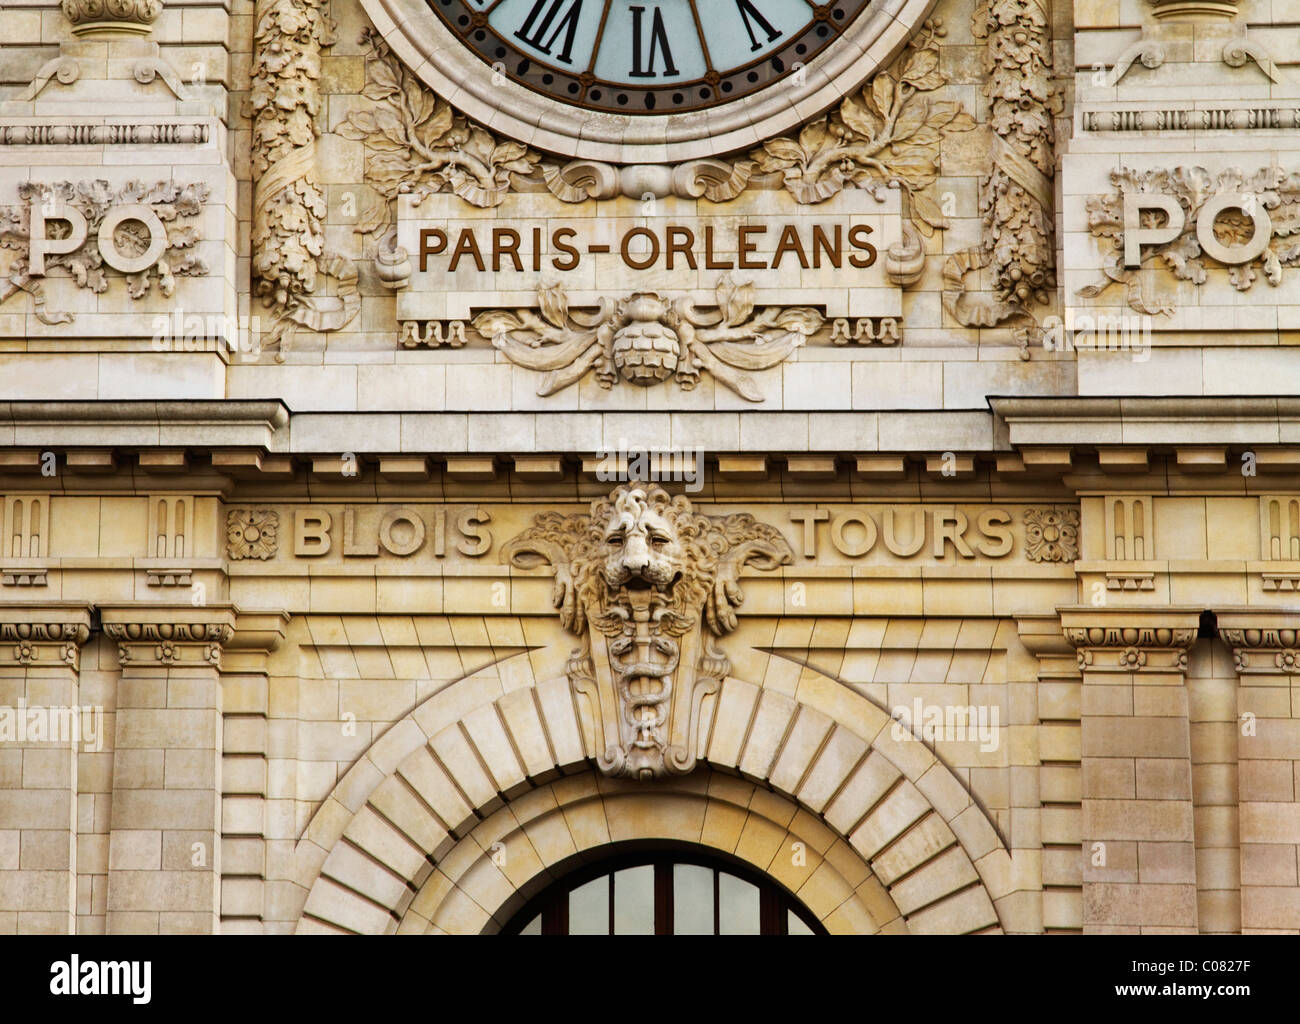 Uhr an einer Railway Station, Paris Orleans Bahnhofsuhr, Paris, Frankreich Stockfoto